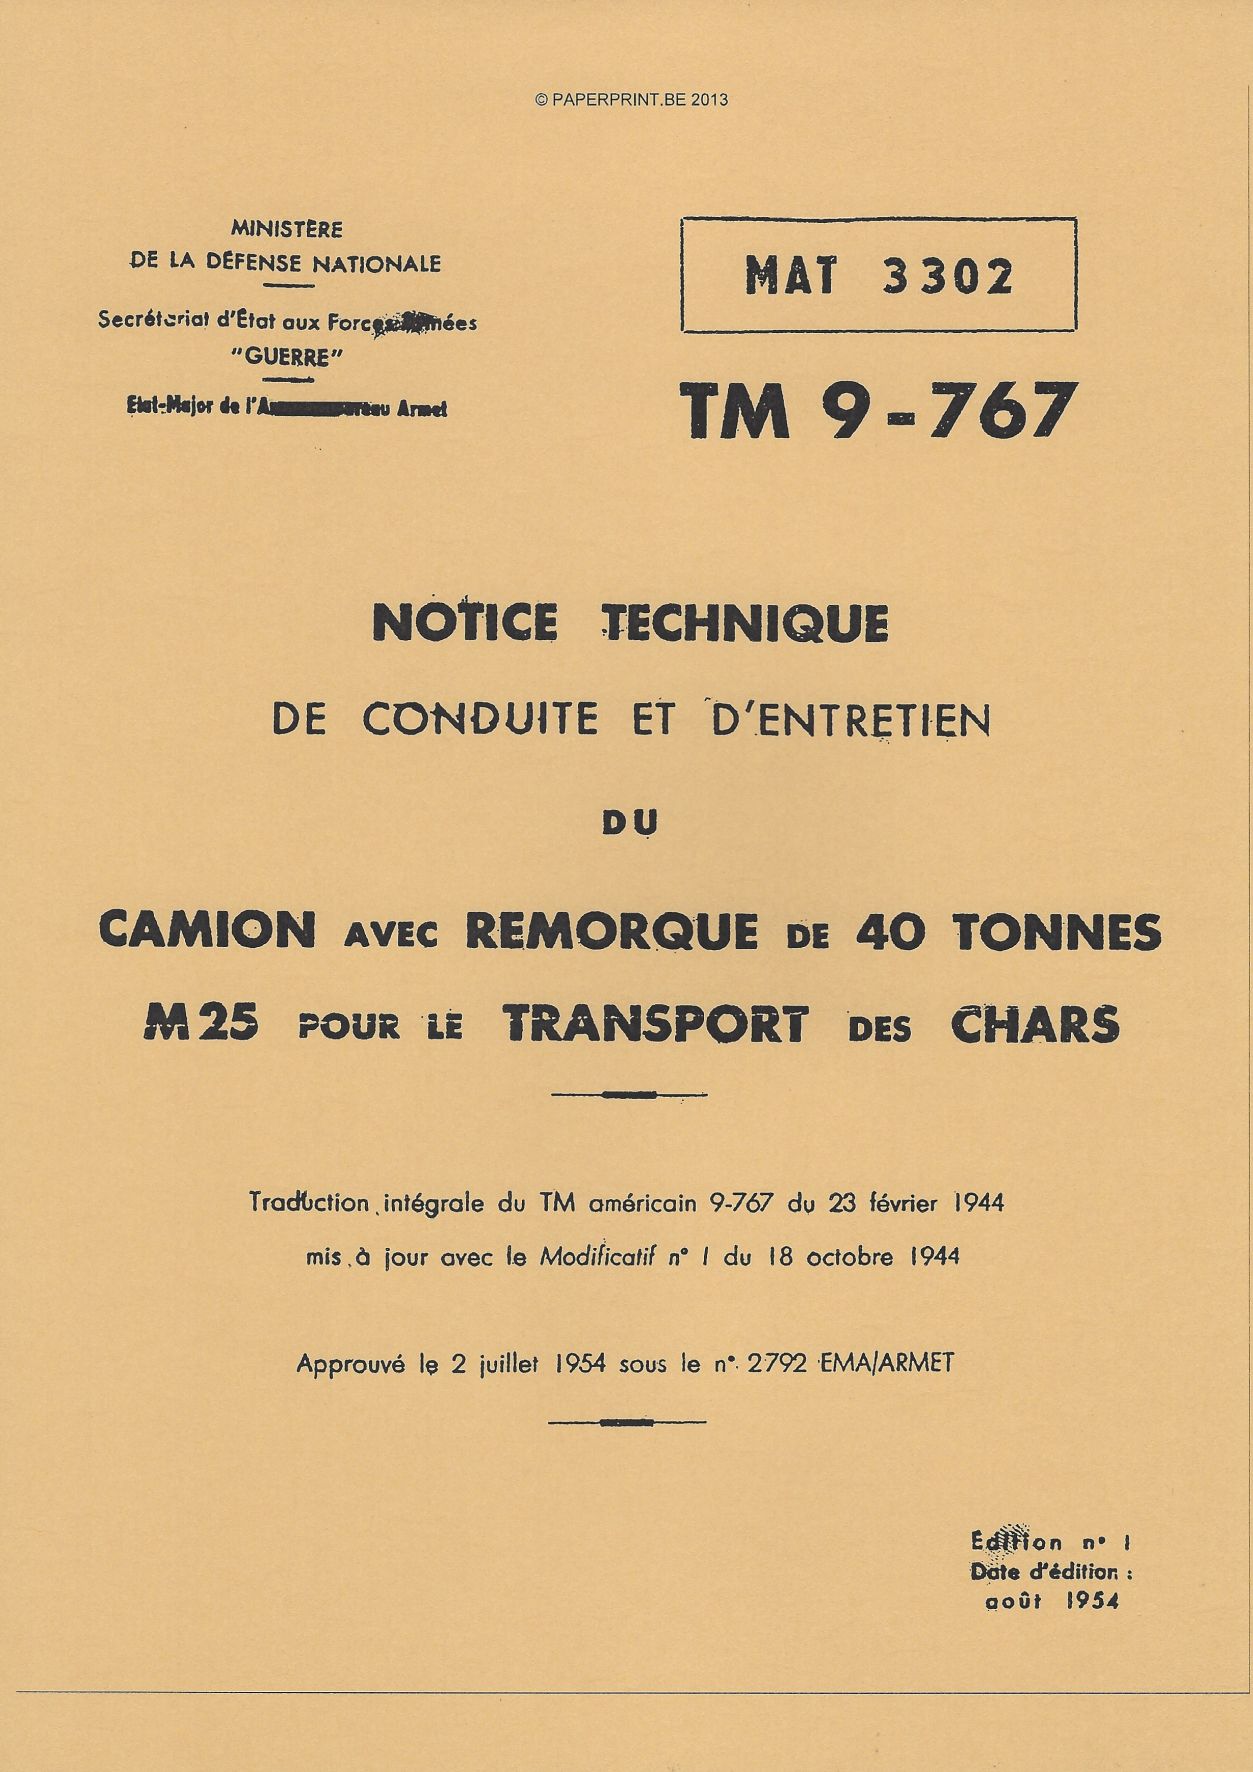 TM 9-767 FR CAMION AVEC REMORQUE DE 40 TONNES M25